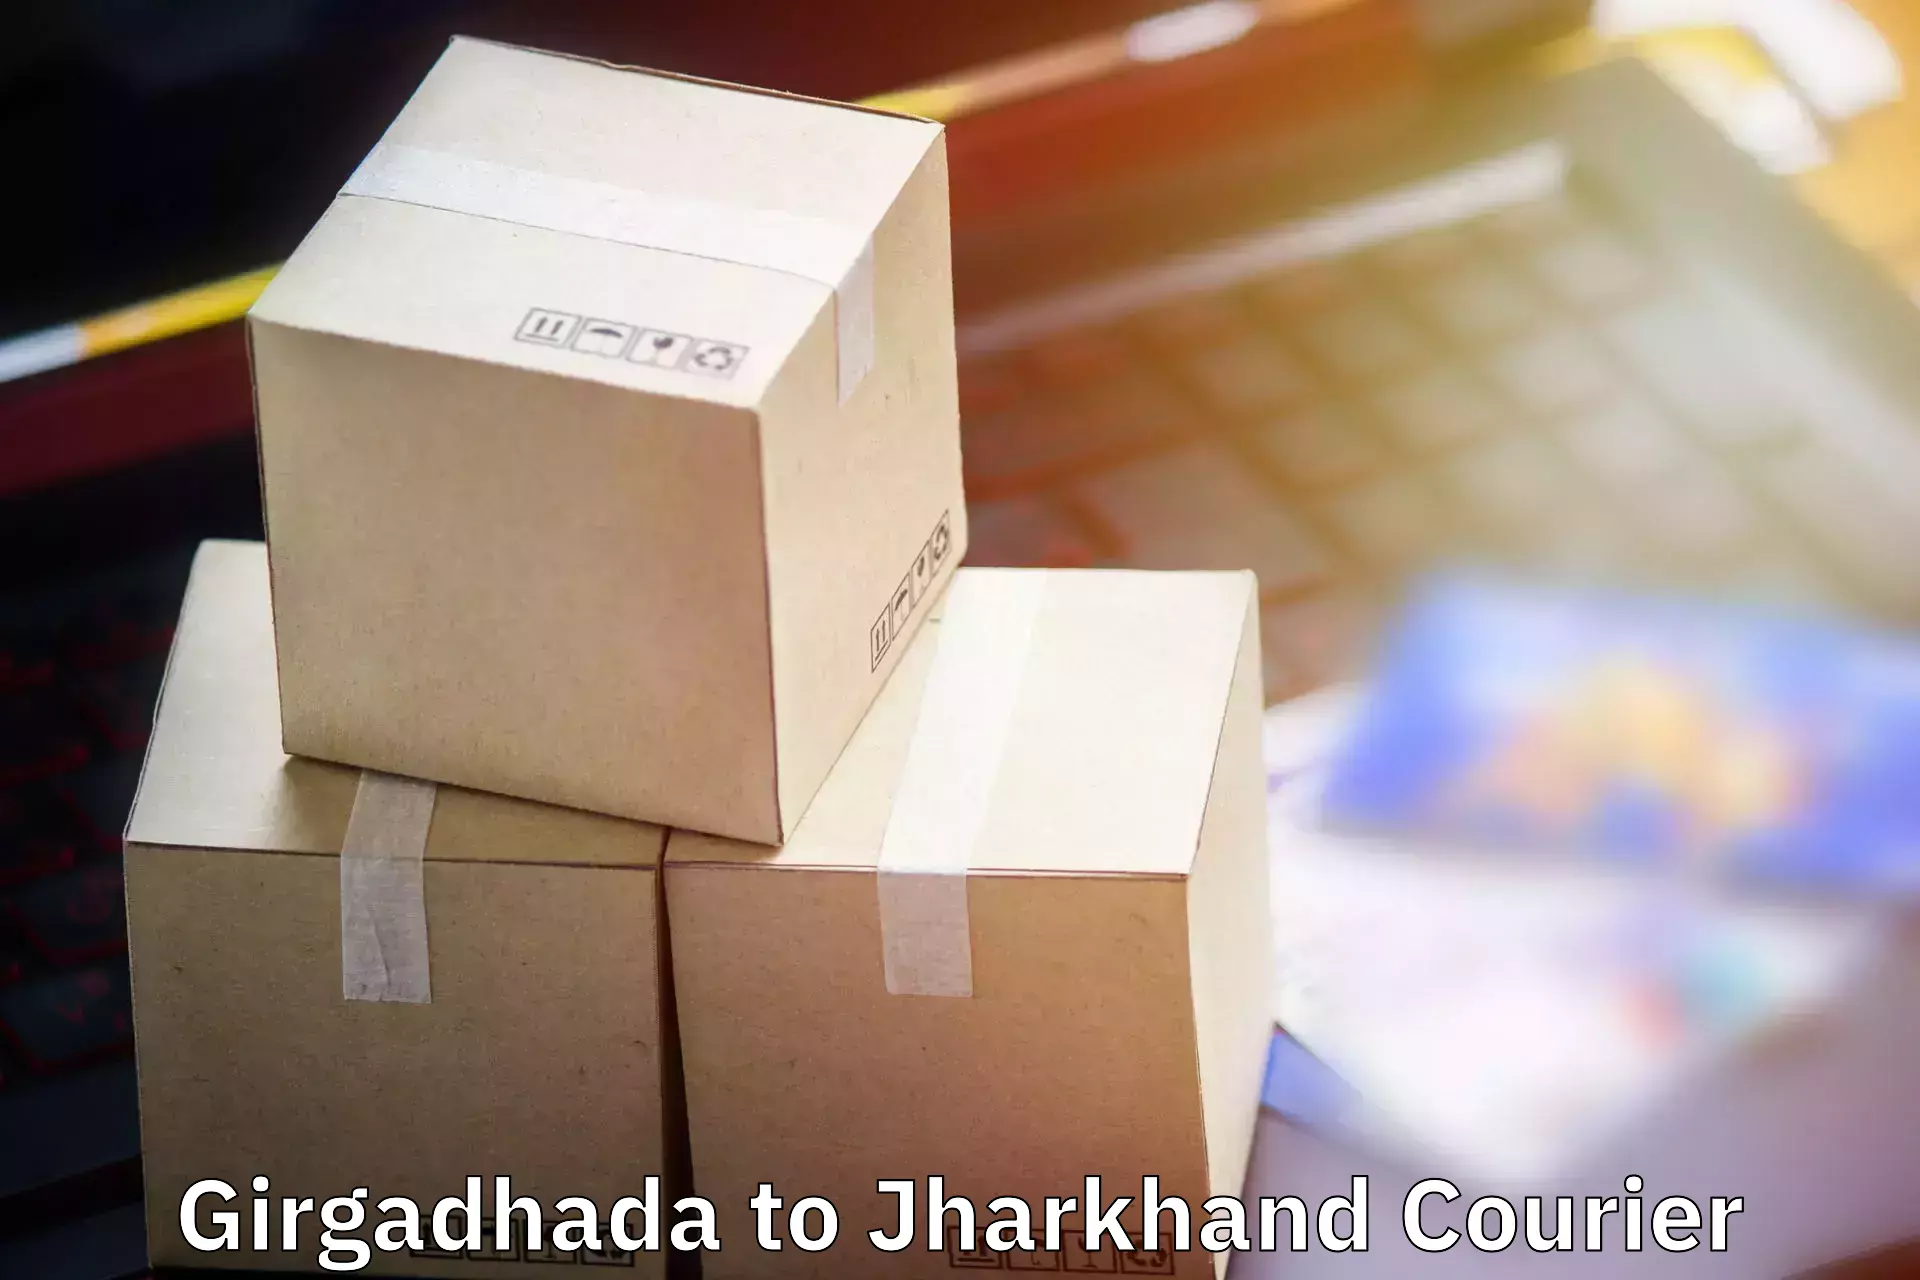 Personal effects shipping Girgadhada to Ranka Garhwa